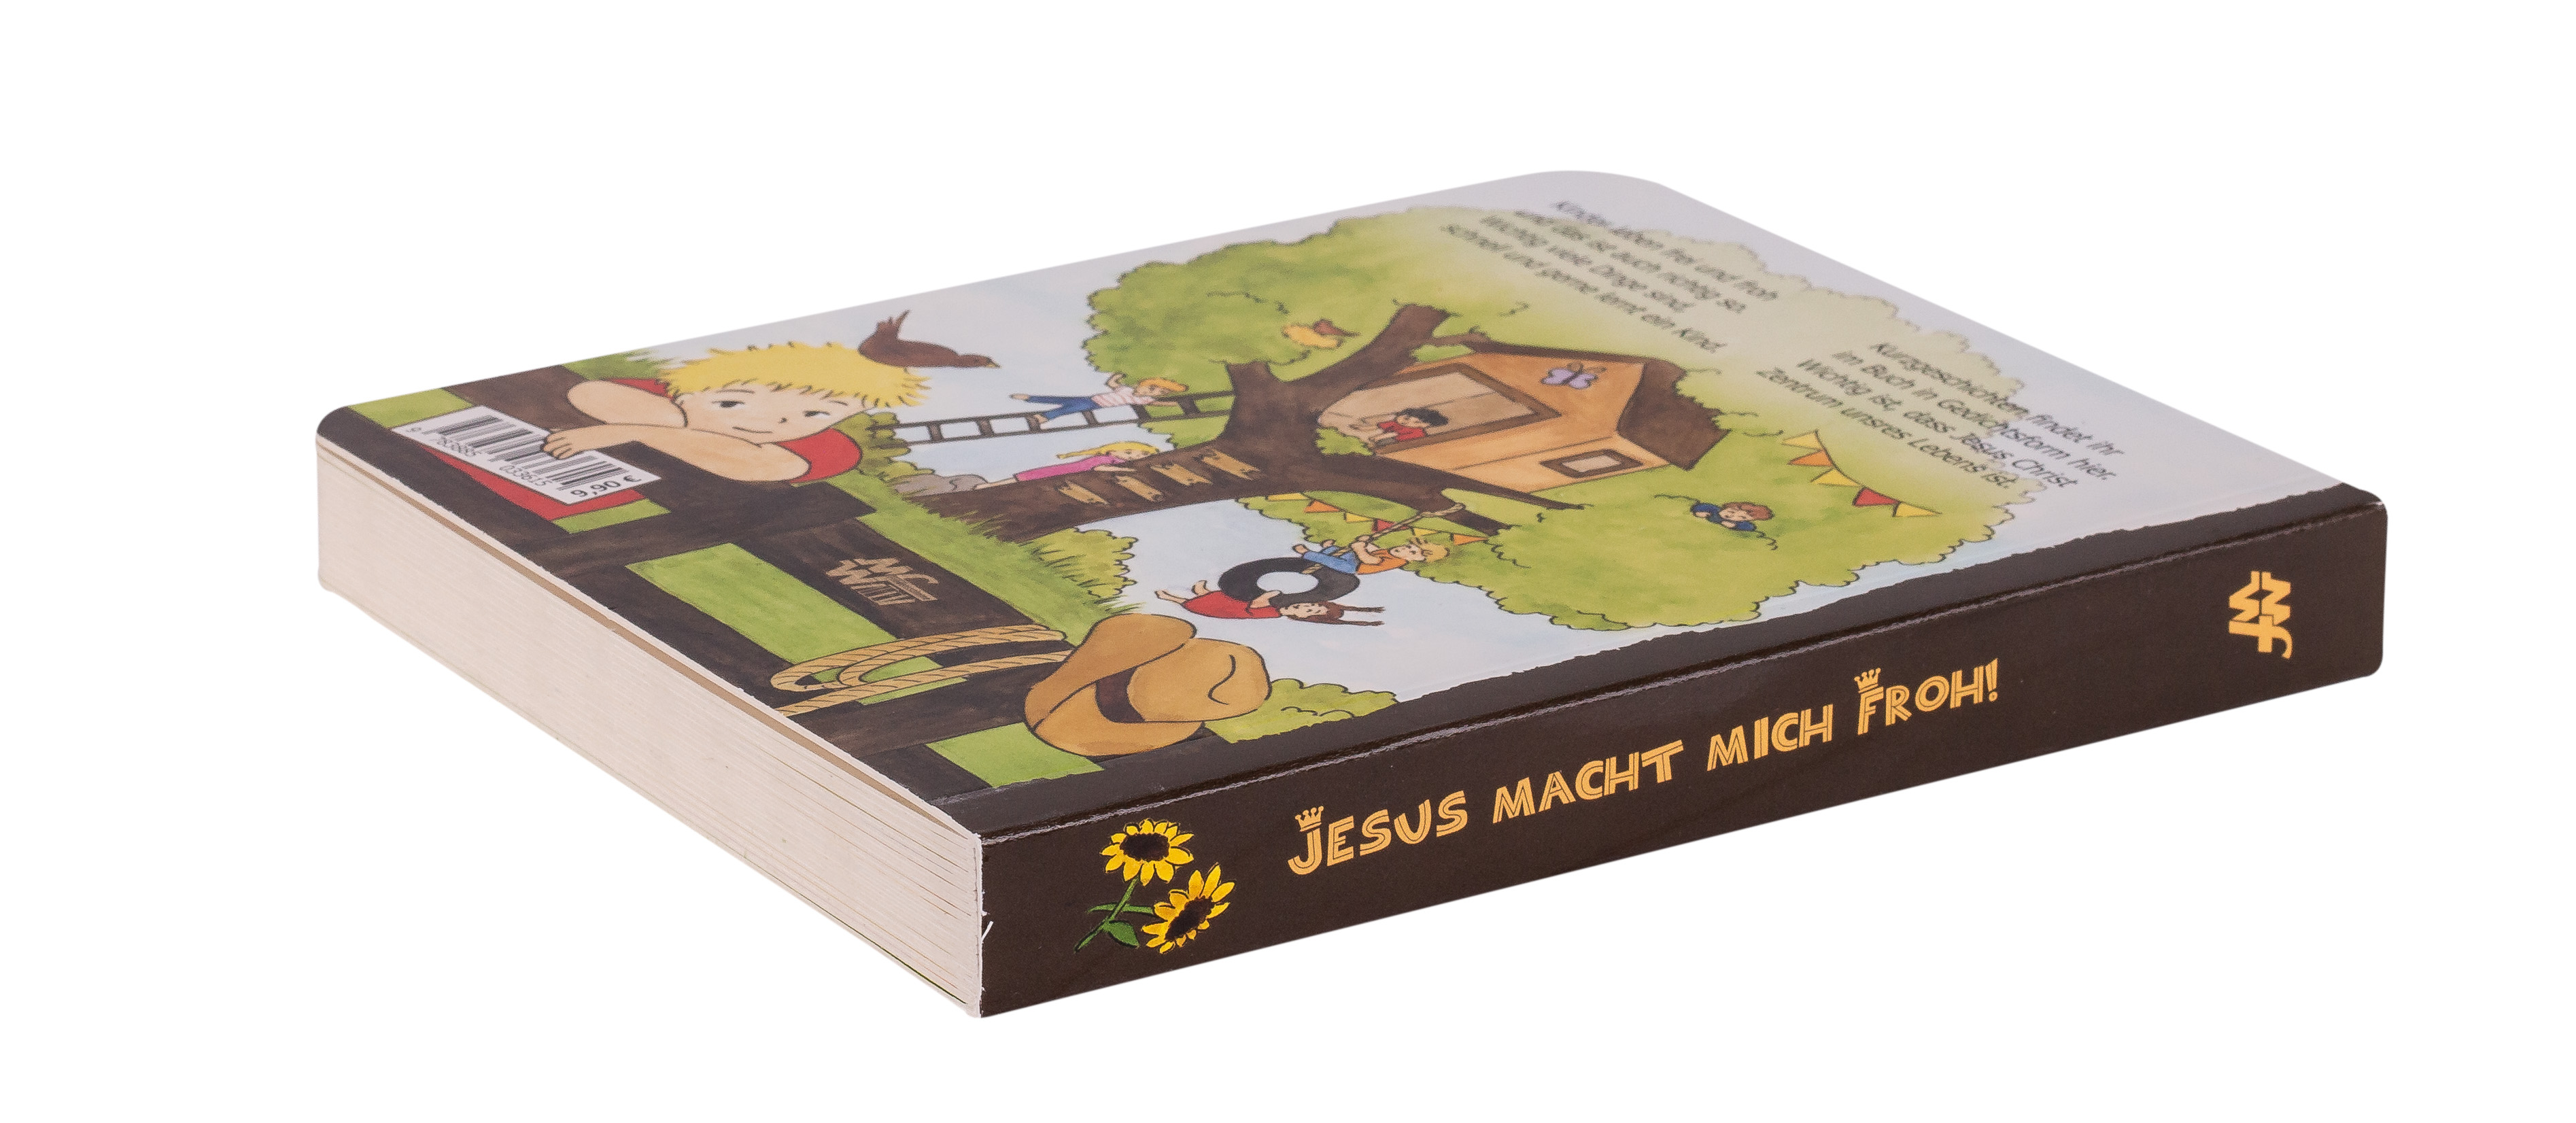 Pappbuch - Jesus macht mich froh!